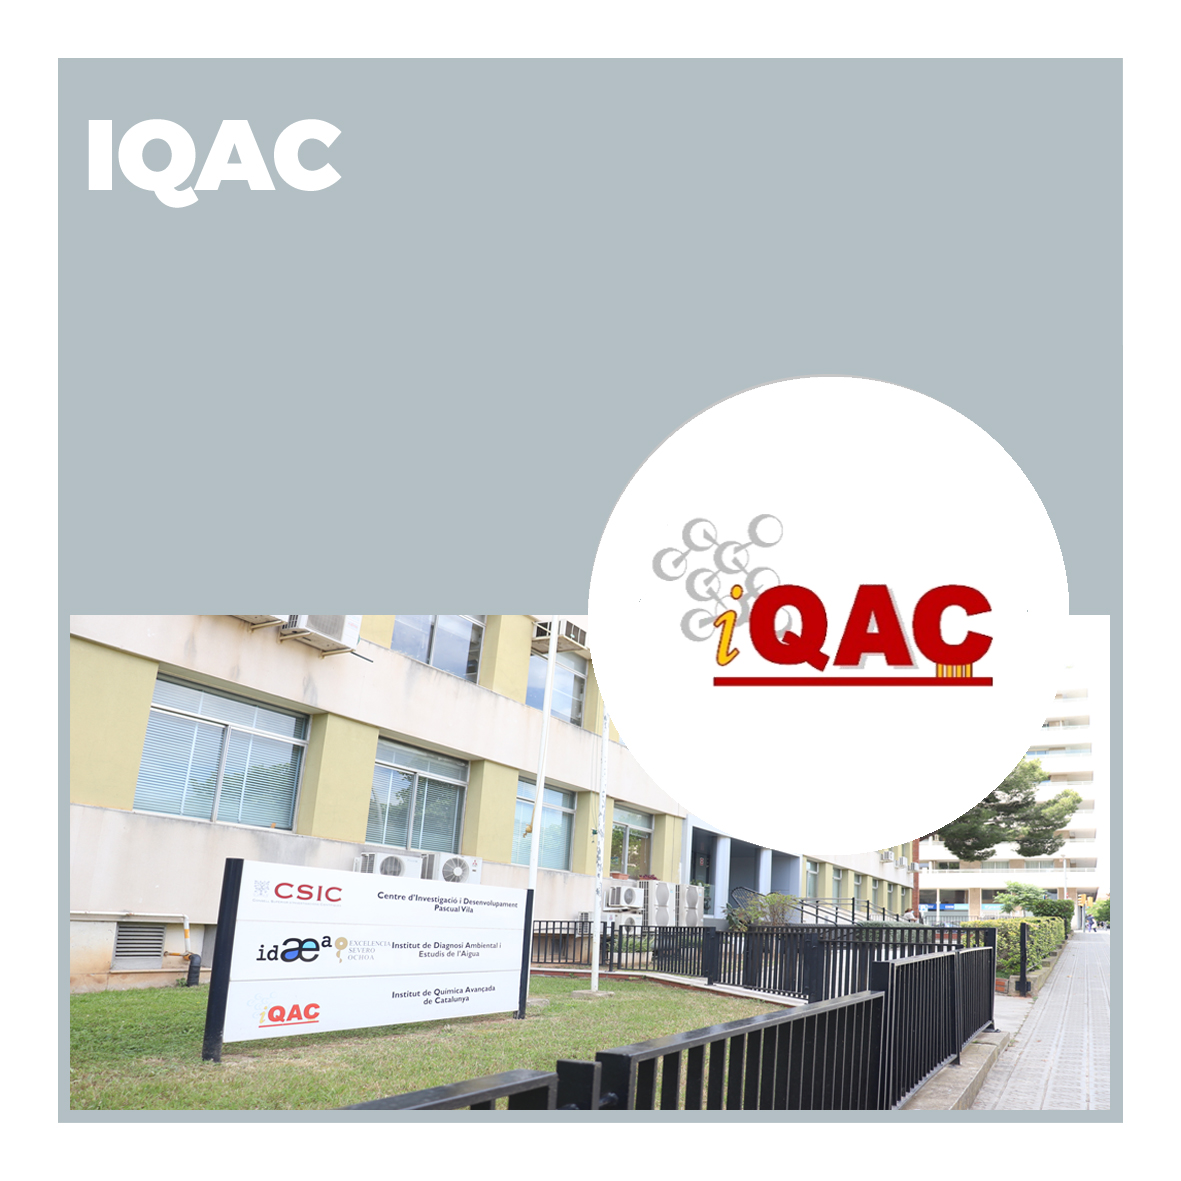 Instituto de Química Avanzada de Cataluña (IQAC)